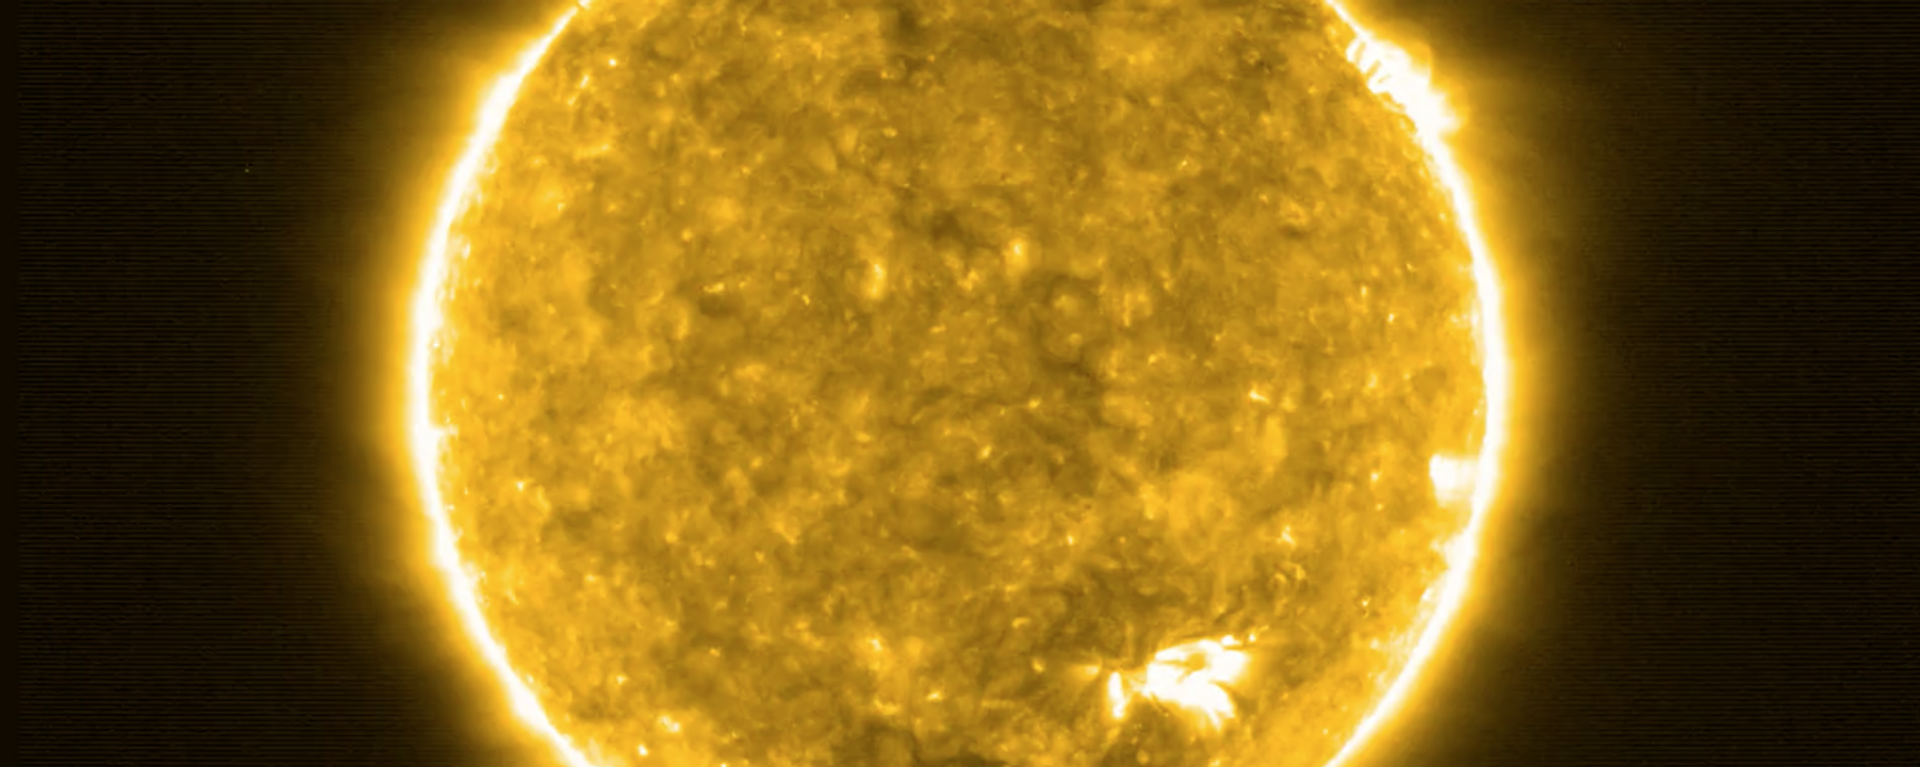 Imagen del Sol tomada por Solar Orbiter - Sputnik Mundo, 1920, 17.09.2020